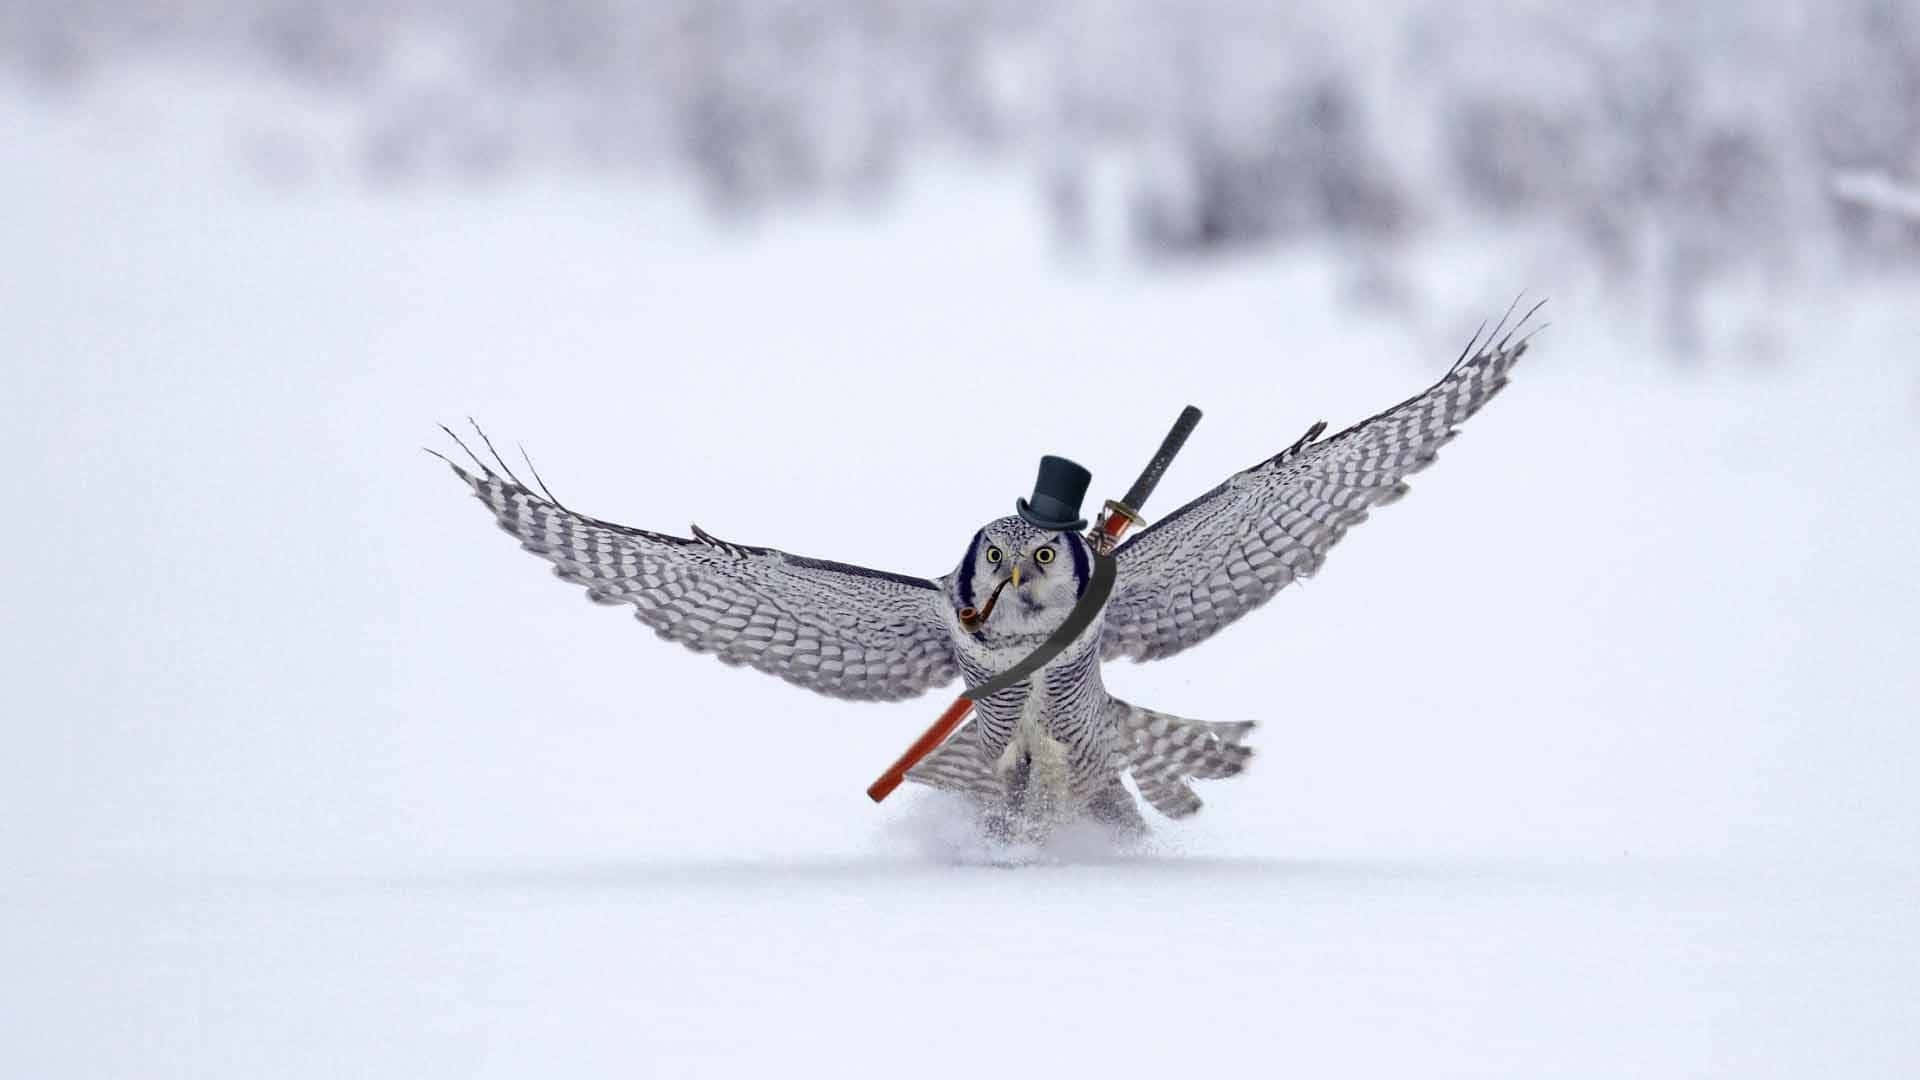 Divertidaimagen De Un Búho De Nieve Volando Con Una Espada.